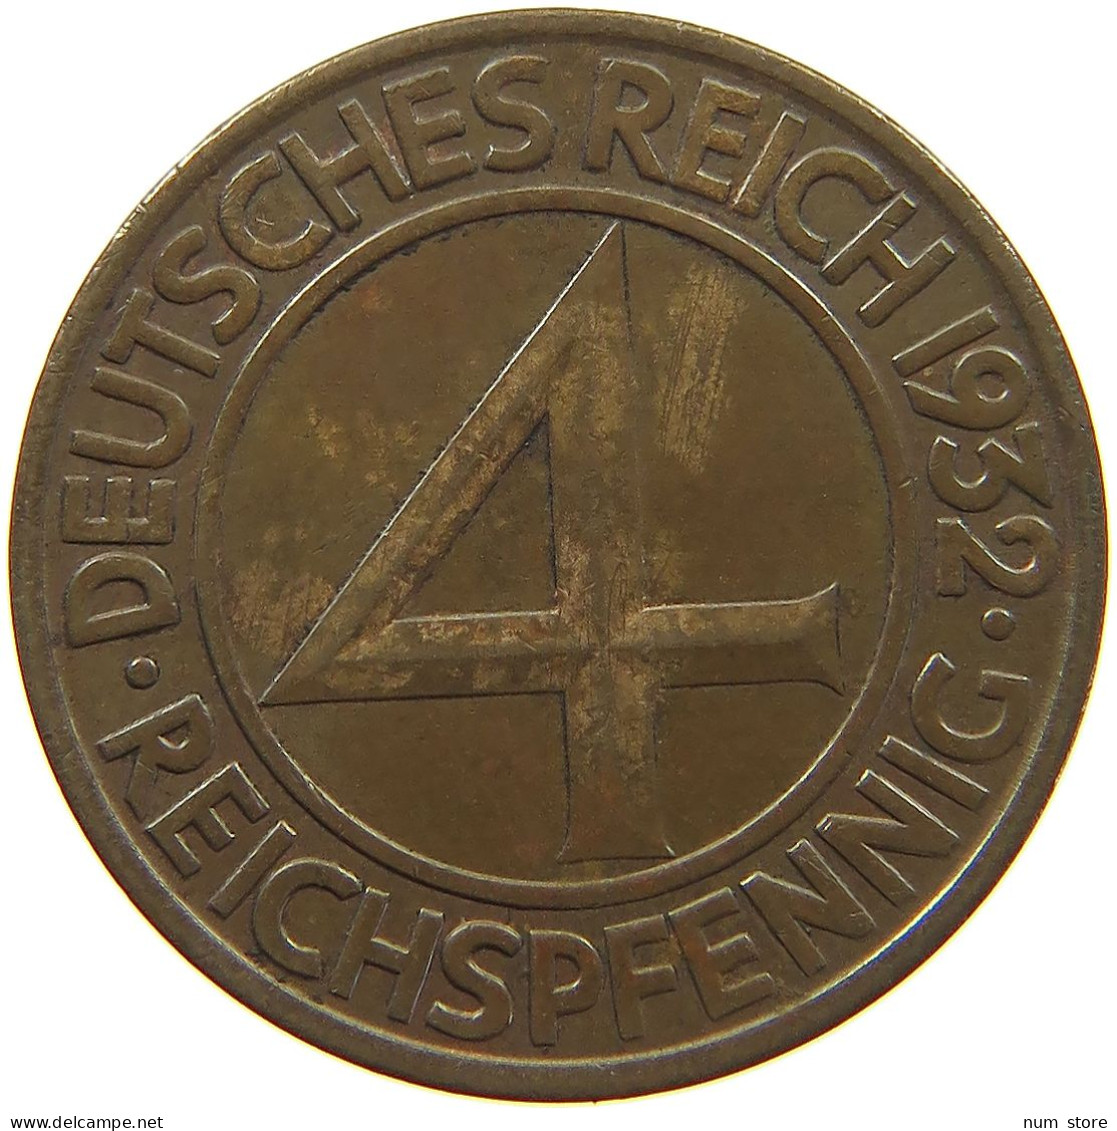 WEIMARER REPUBLIK 4 PFENNIG 1932 A  #c020 0345 - 4 Reichspfennig